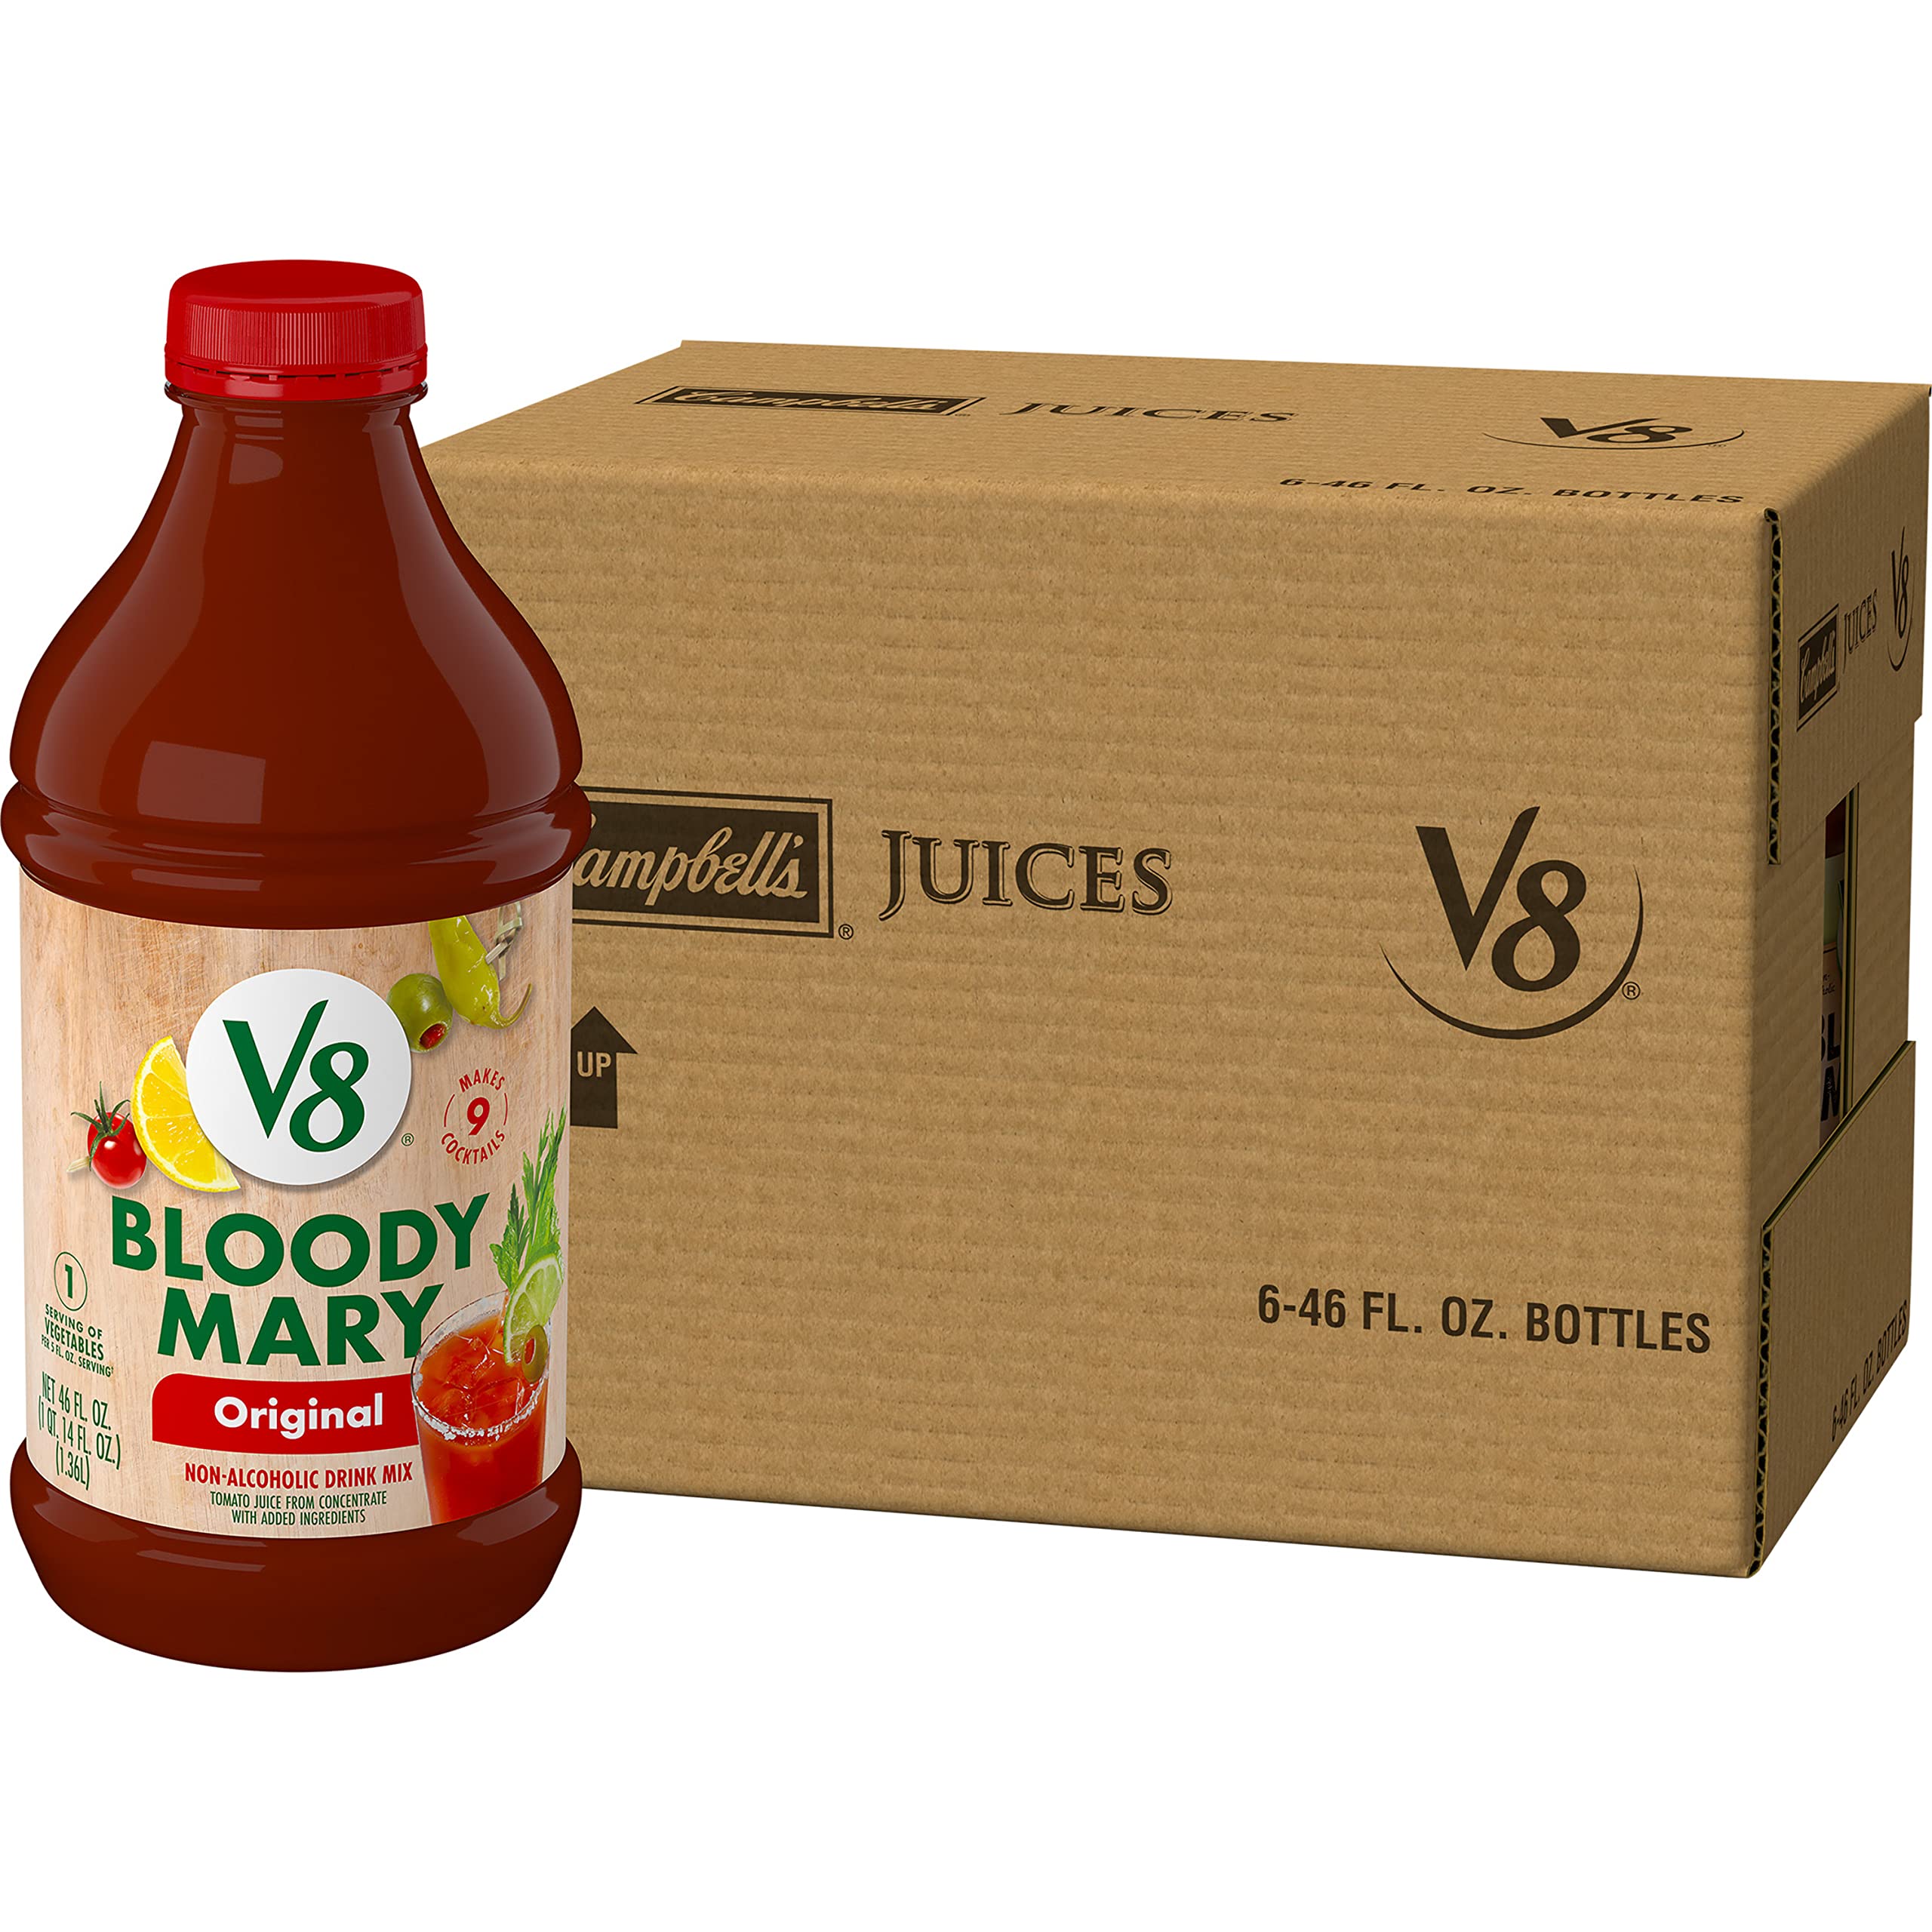 V8 Vegetable Juice Bloody Mary Mix-Pack of 6, 46 oz. Bottles-$17.29-Amazon